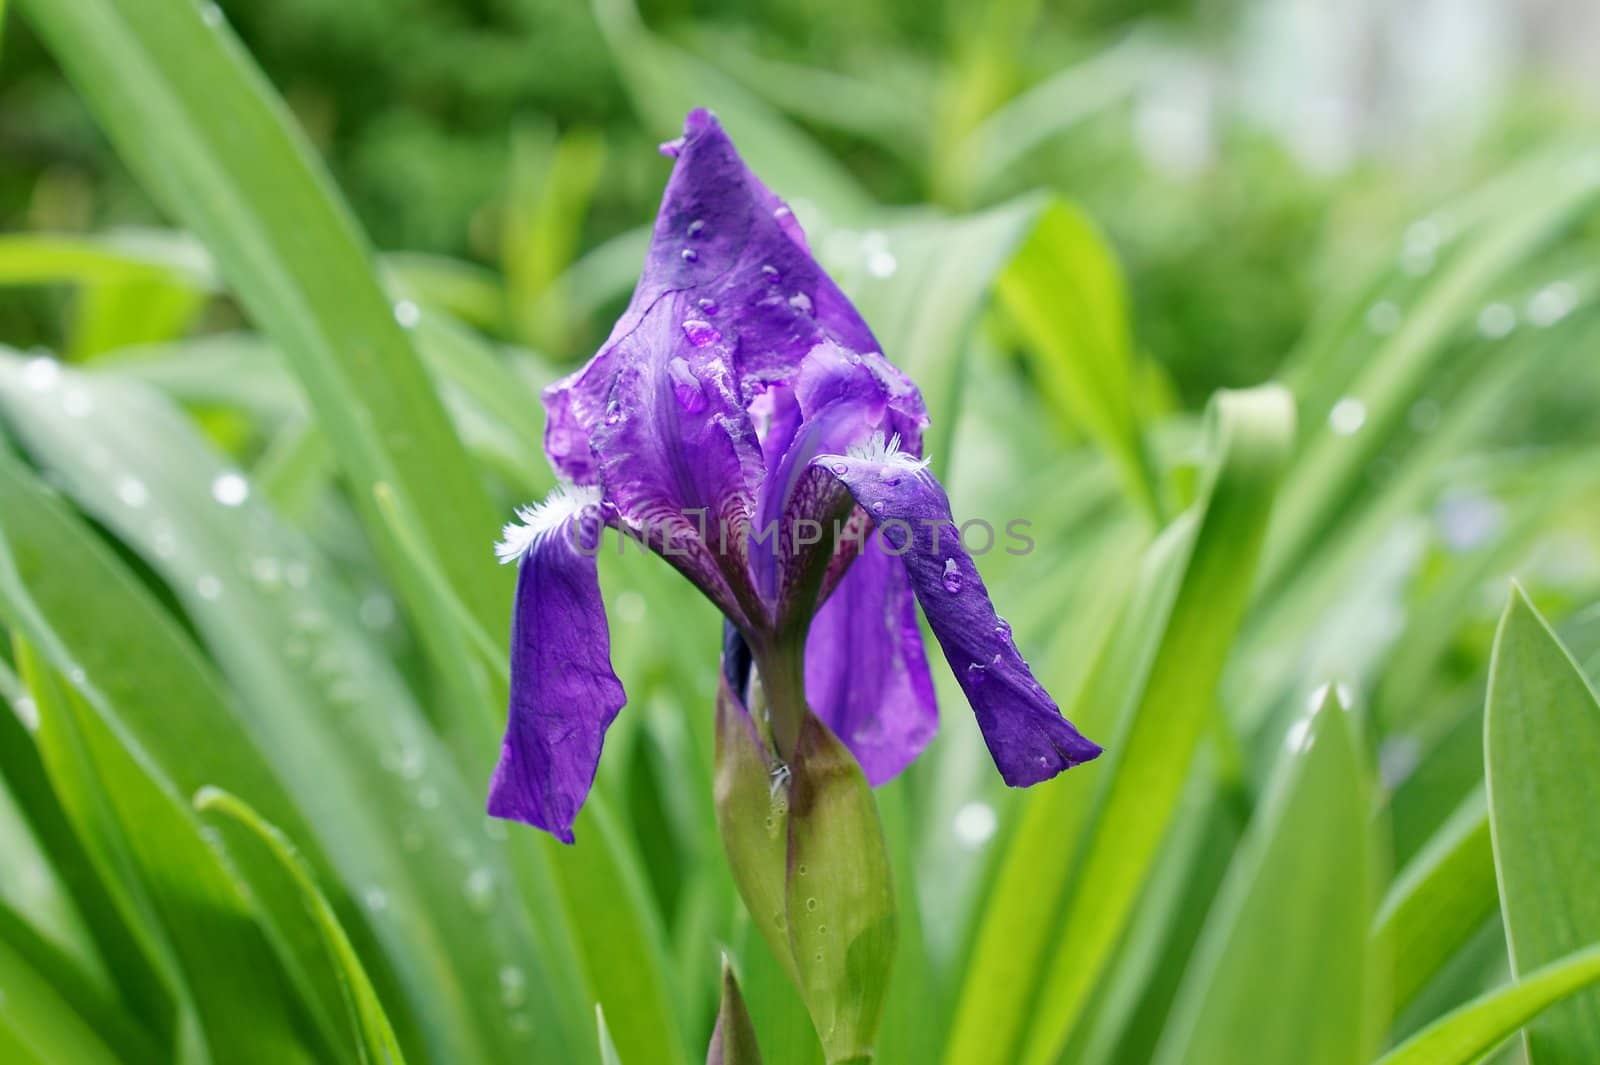 Flower blue iris on a background of green grass.